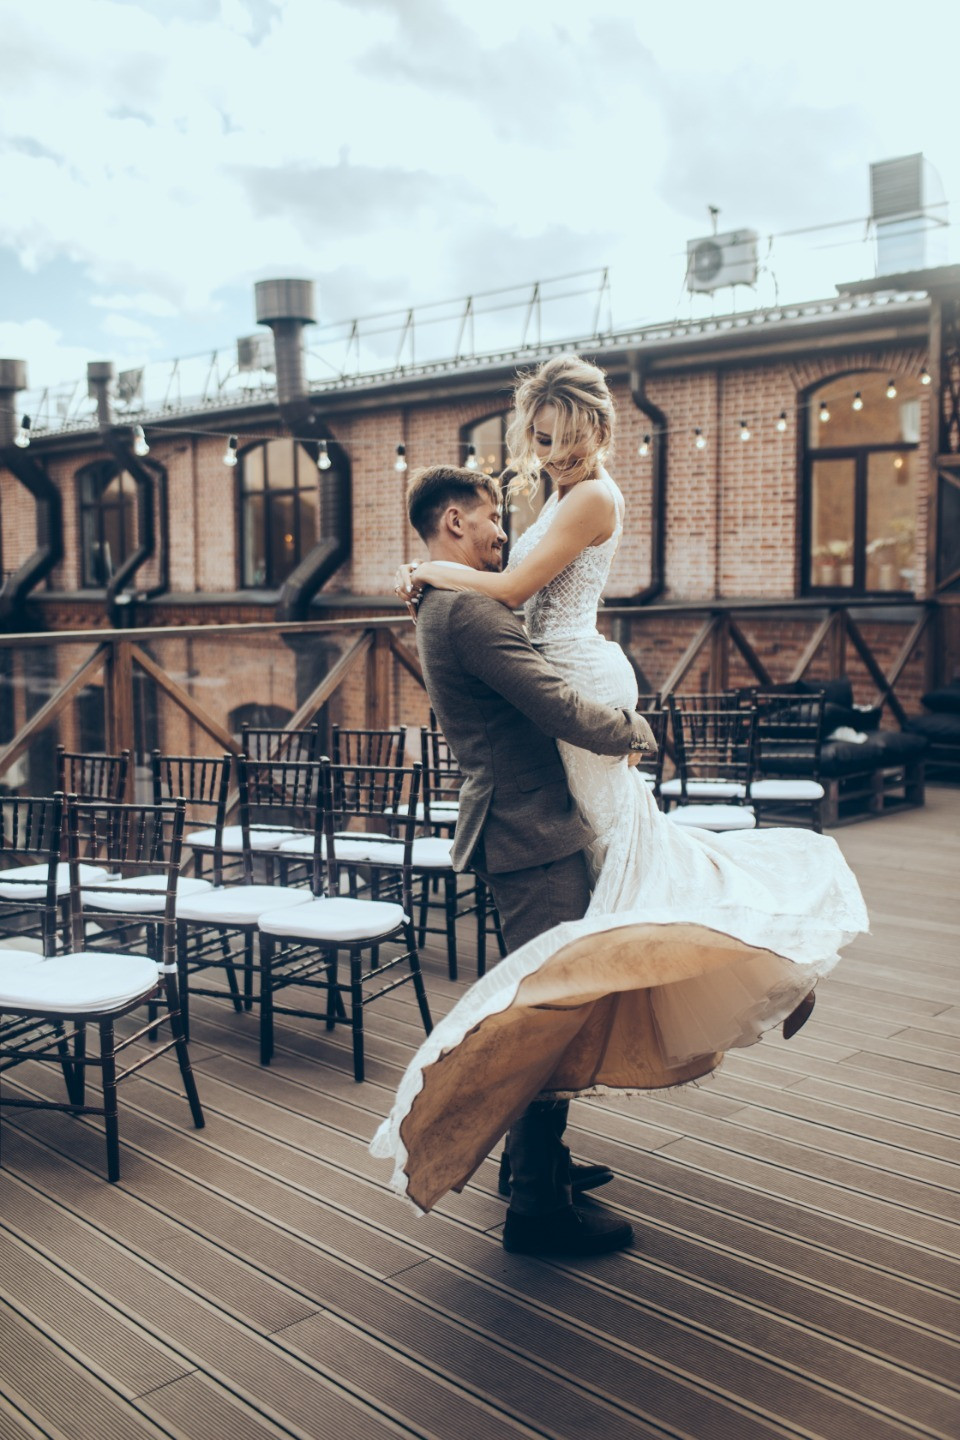 ФОТО ИЗ СТАТЬИ: Лето в Петербурге: свадьба в лофте